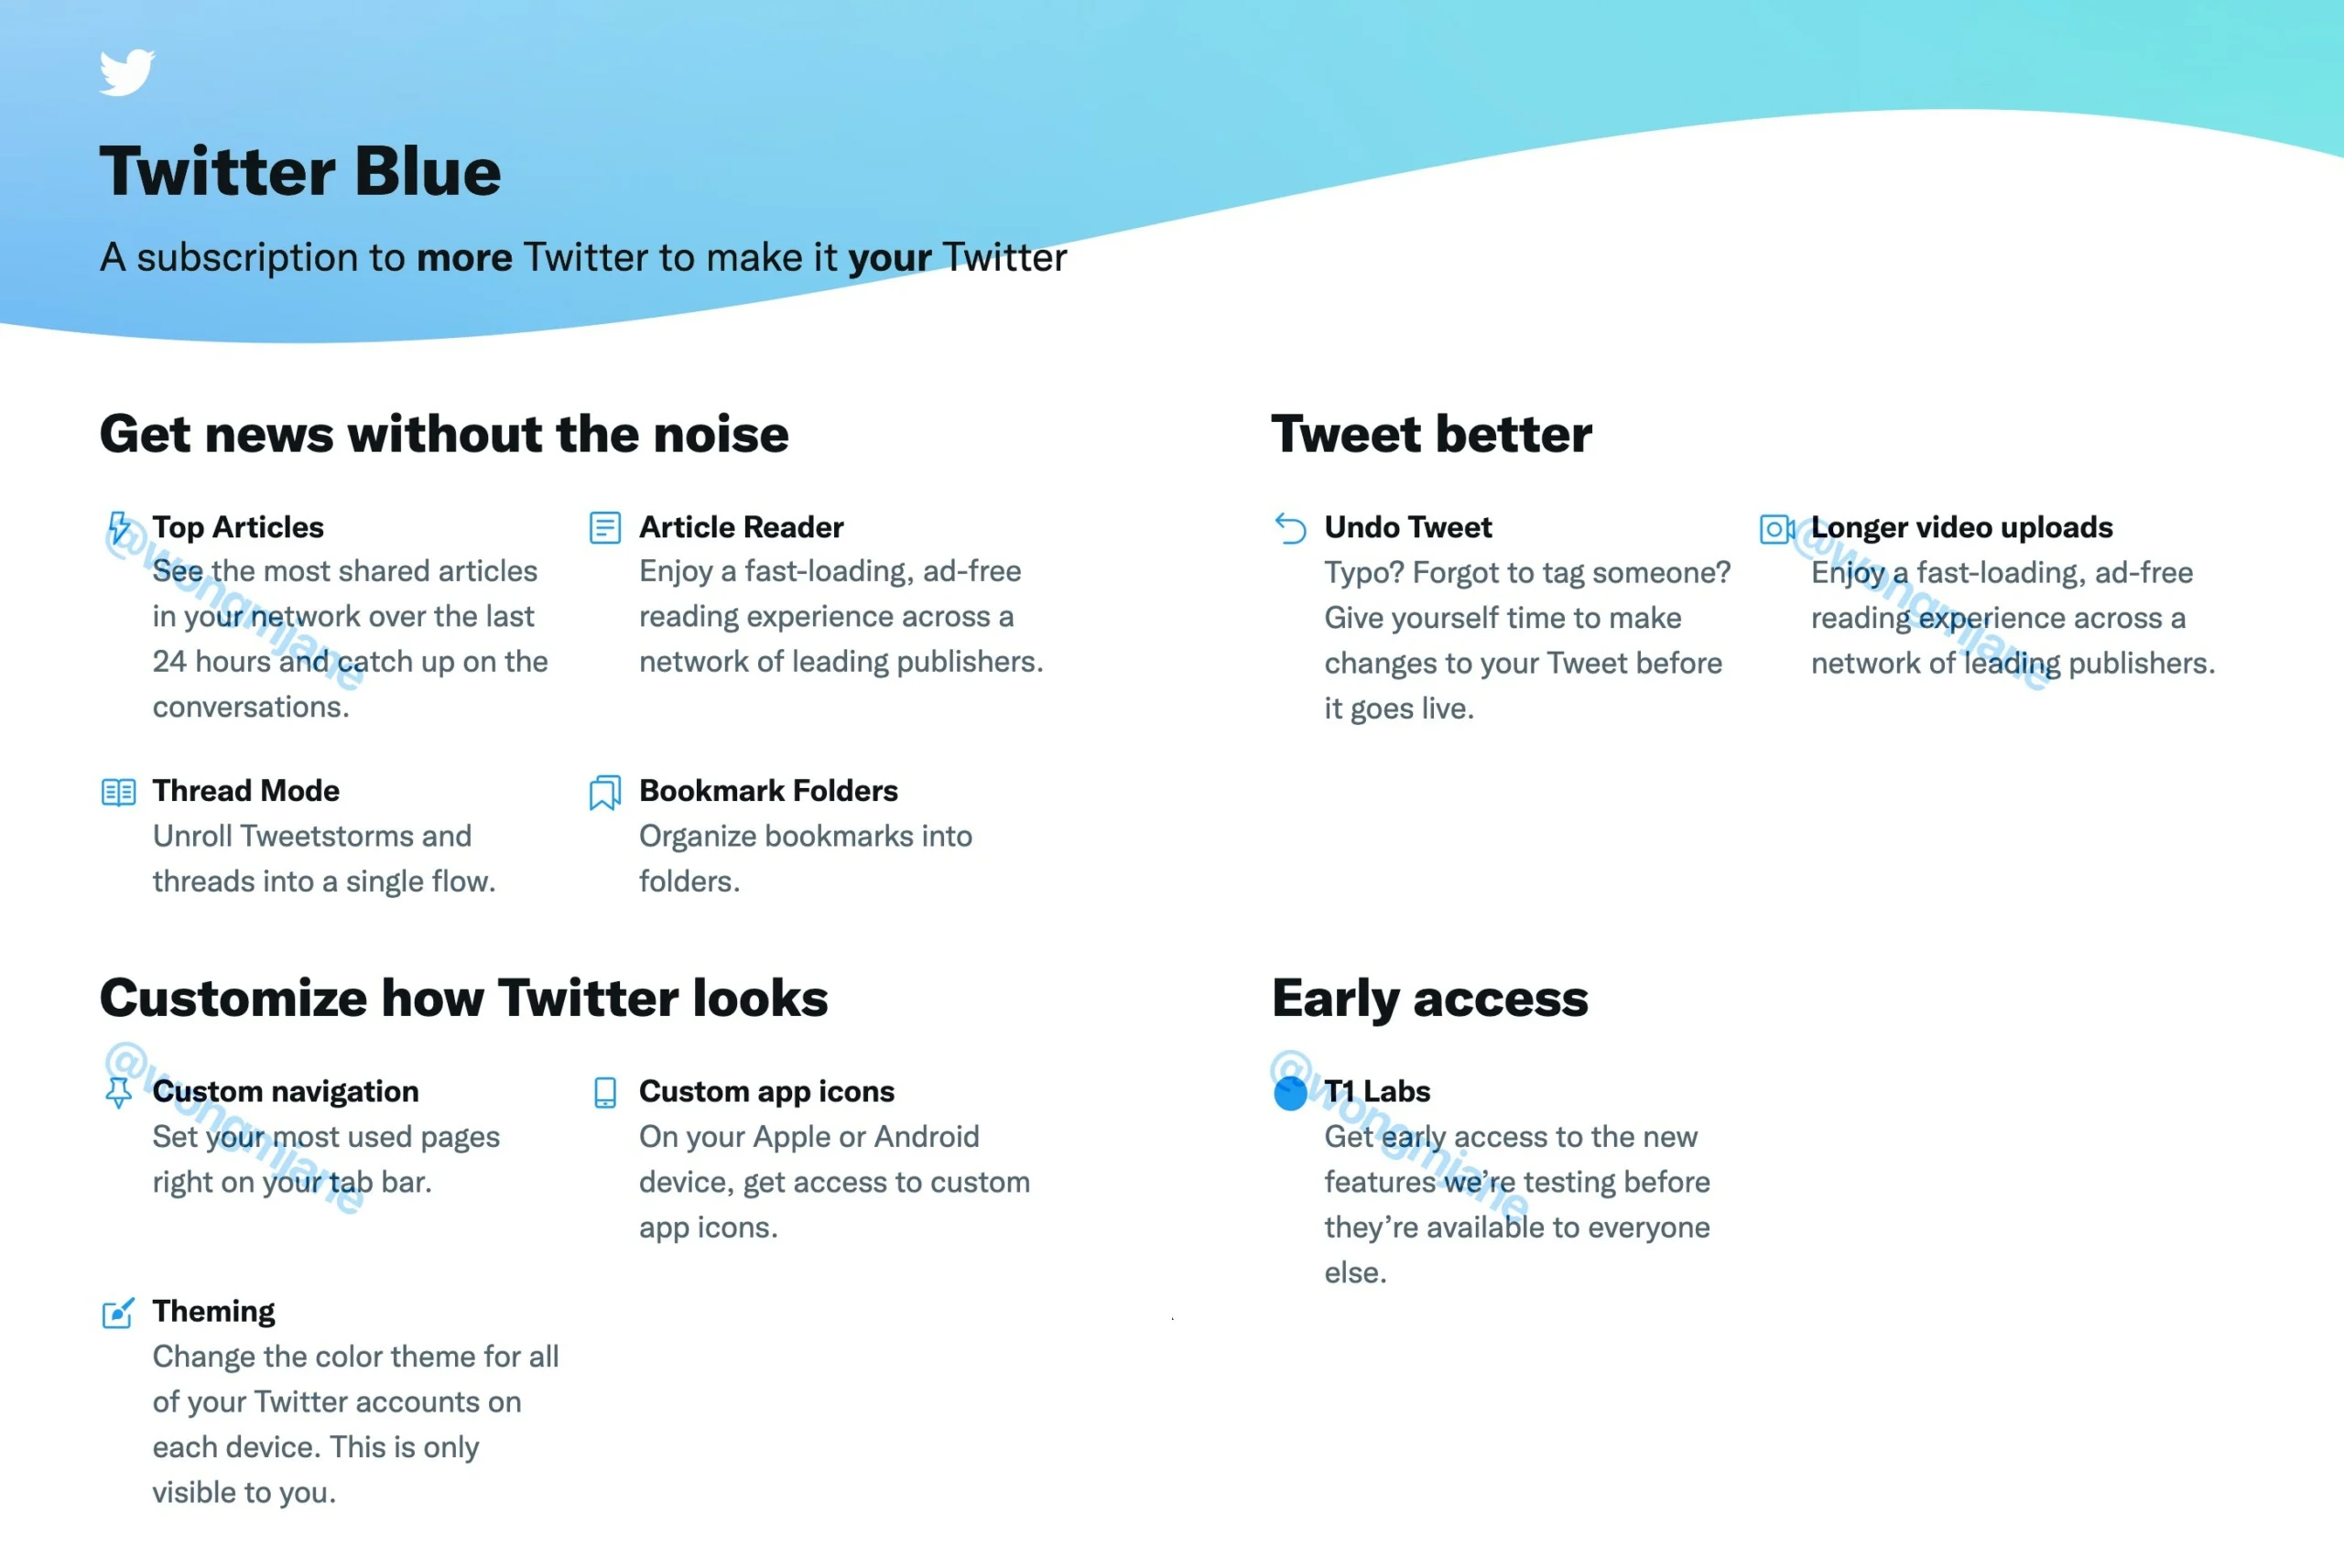 twitter-blue-benefits